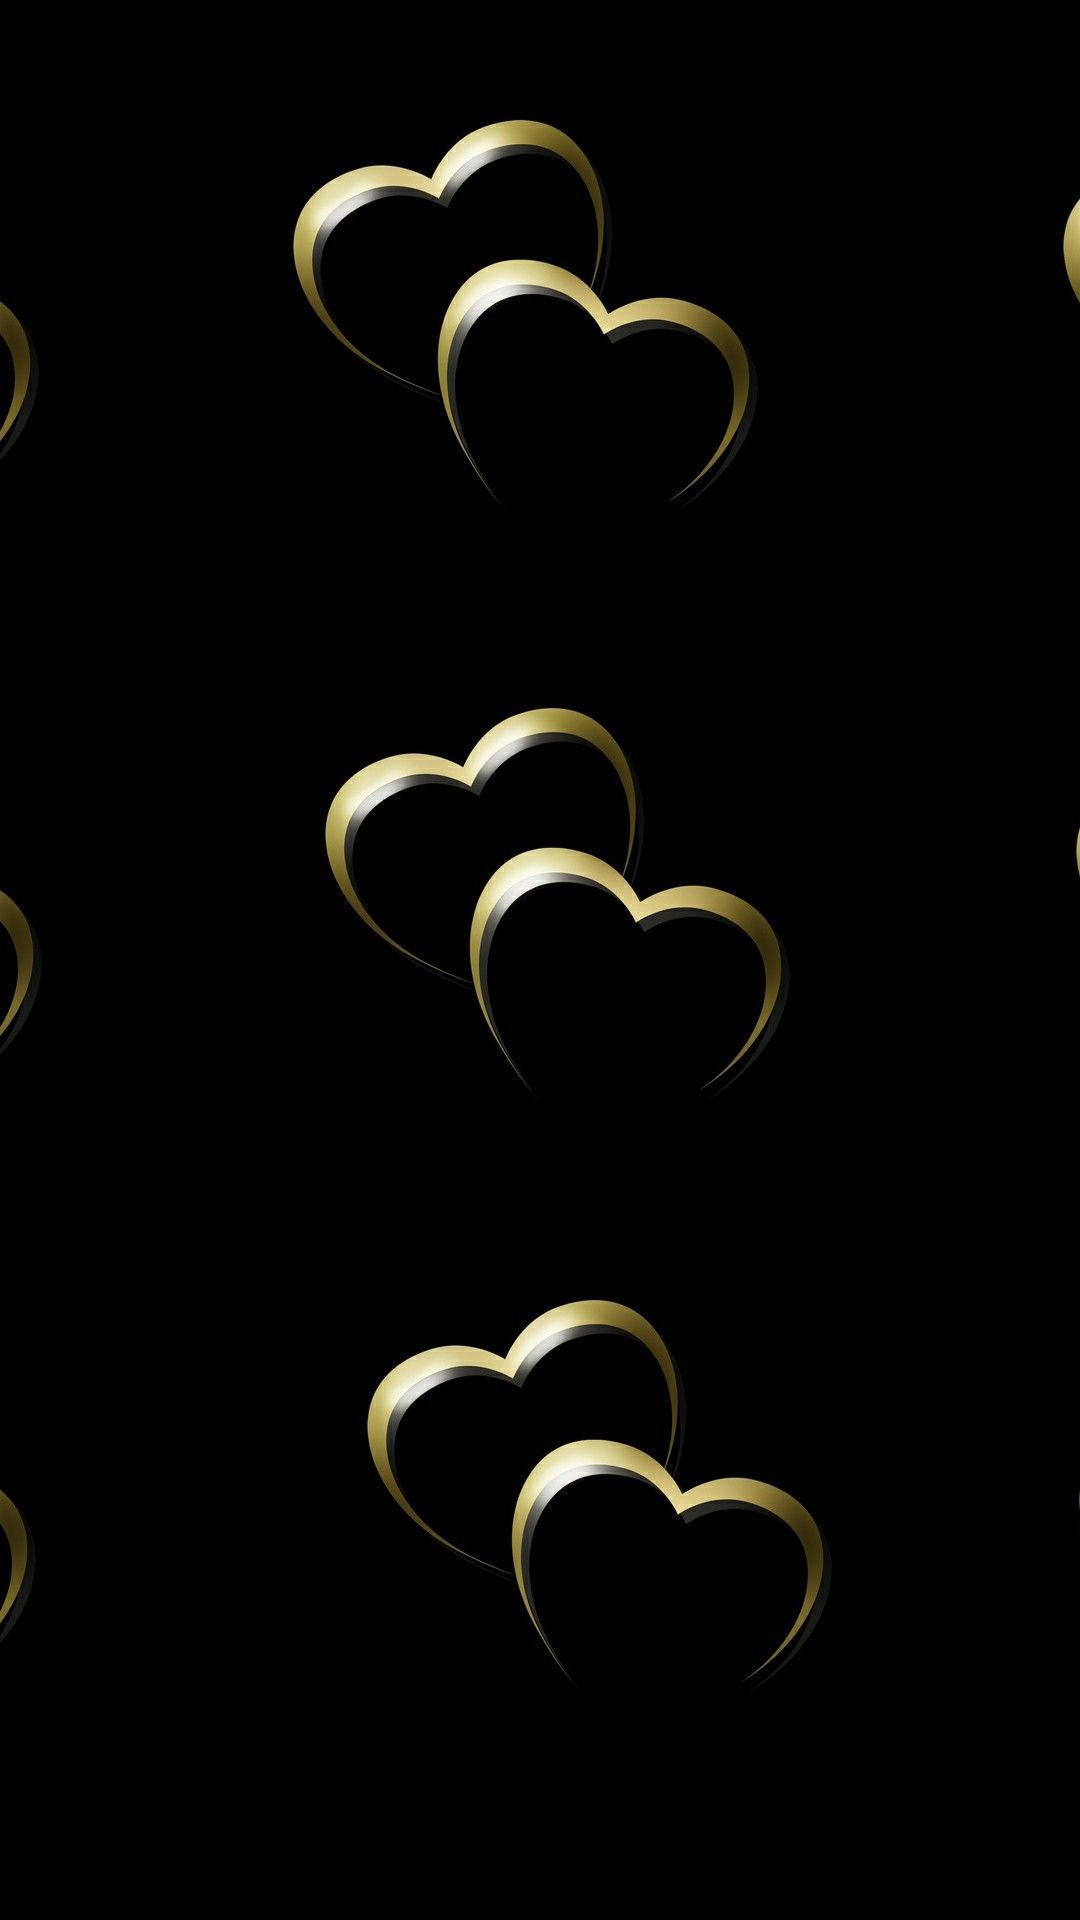 Golden hearts. Heart wallpaper, Phone background patterns, Bling wallpaper